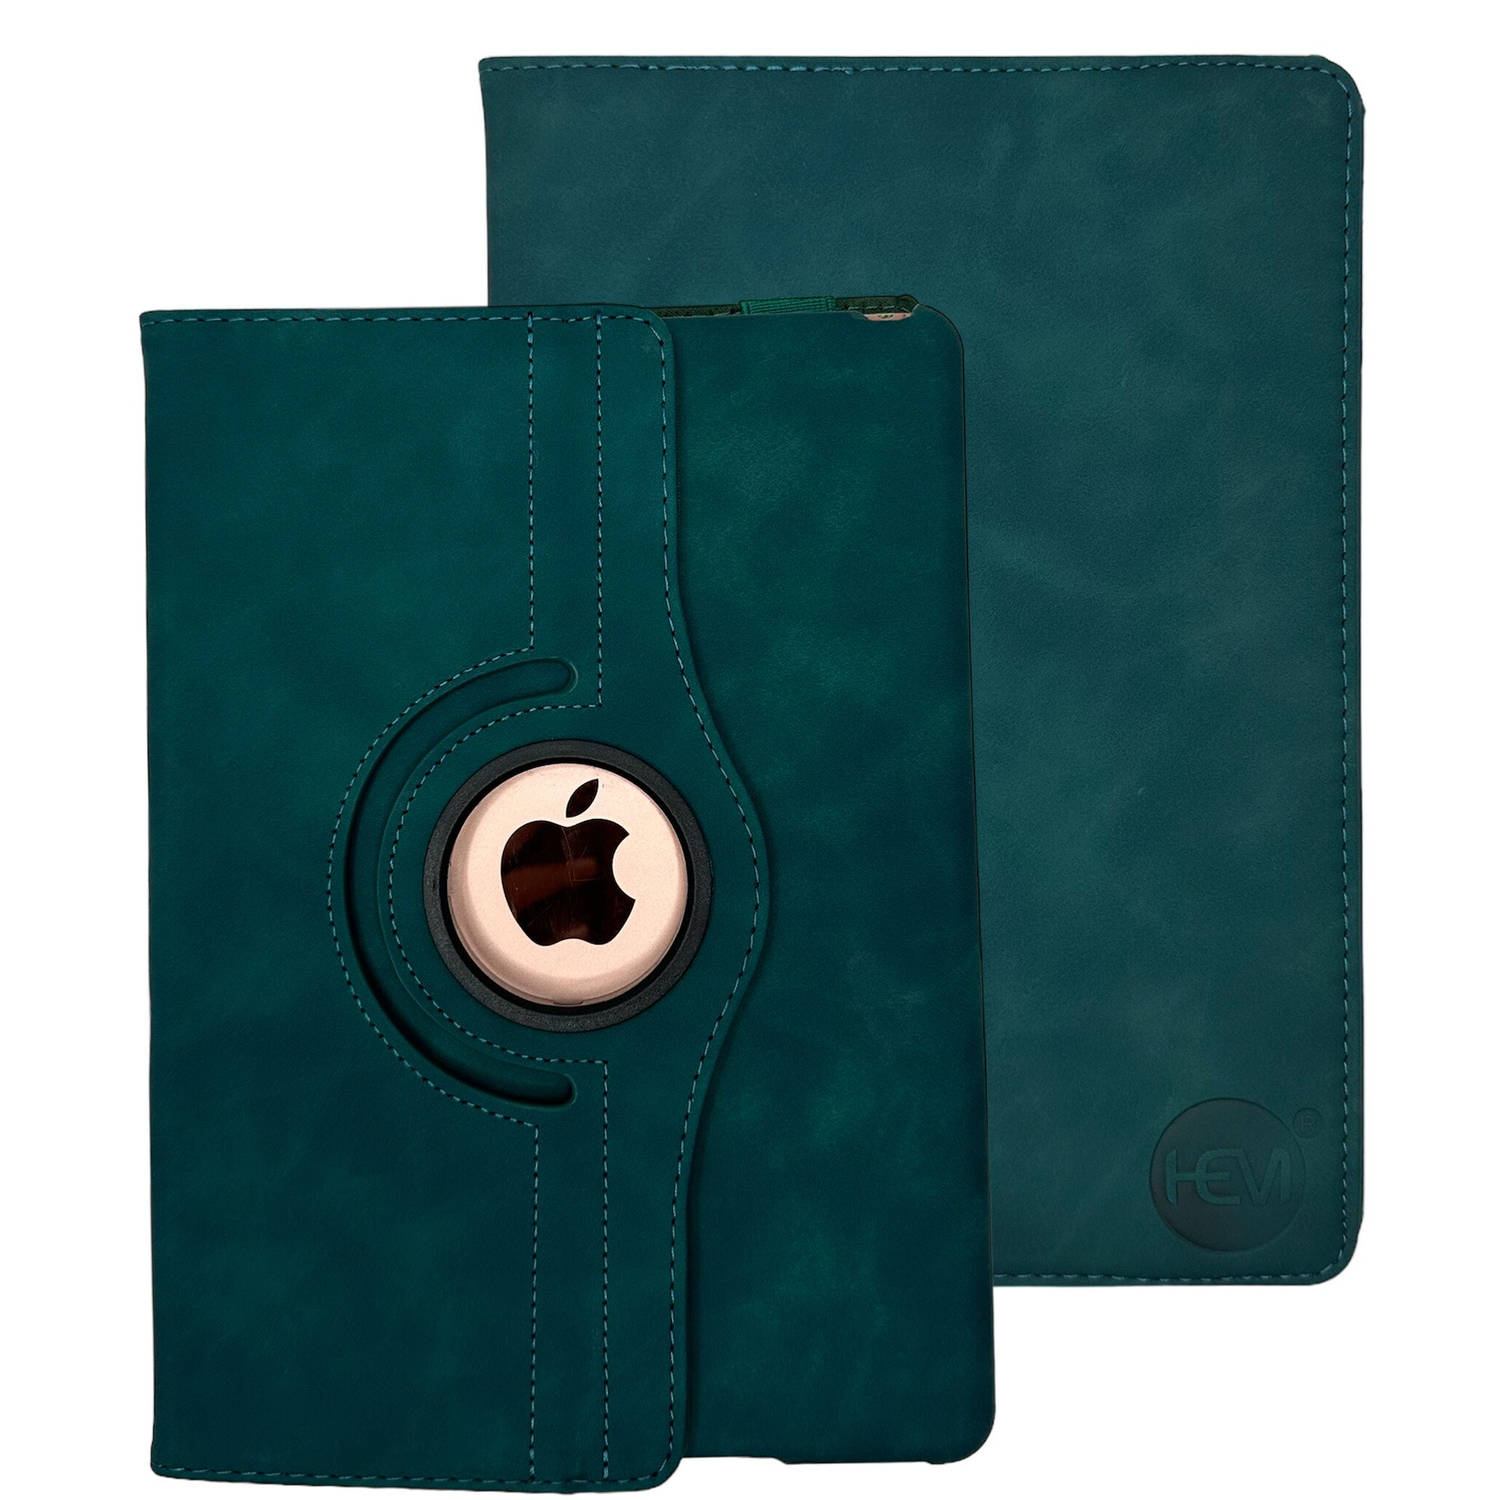 HEM Silky Green iPad hoes geschikt voor iPad Pro 11 (2018/2020/2021/2022) - 11 inch Draaibare Autowake Cover - iPad Pro 11 2018/2020/2021/2022 hoes - iPad Pro 1/2/3/4 Hoes - 1e/2e/